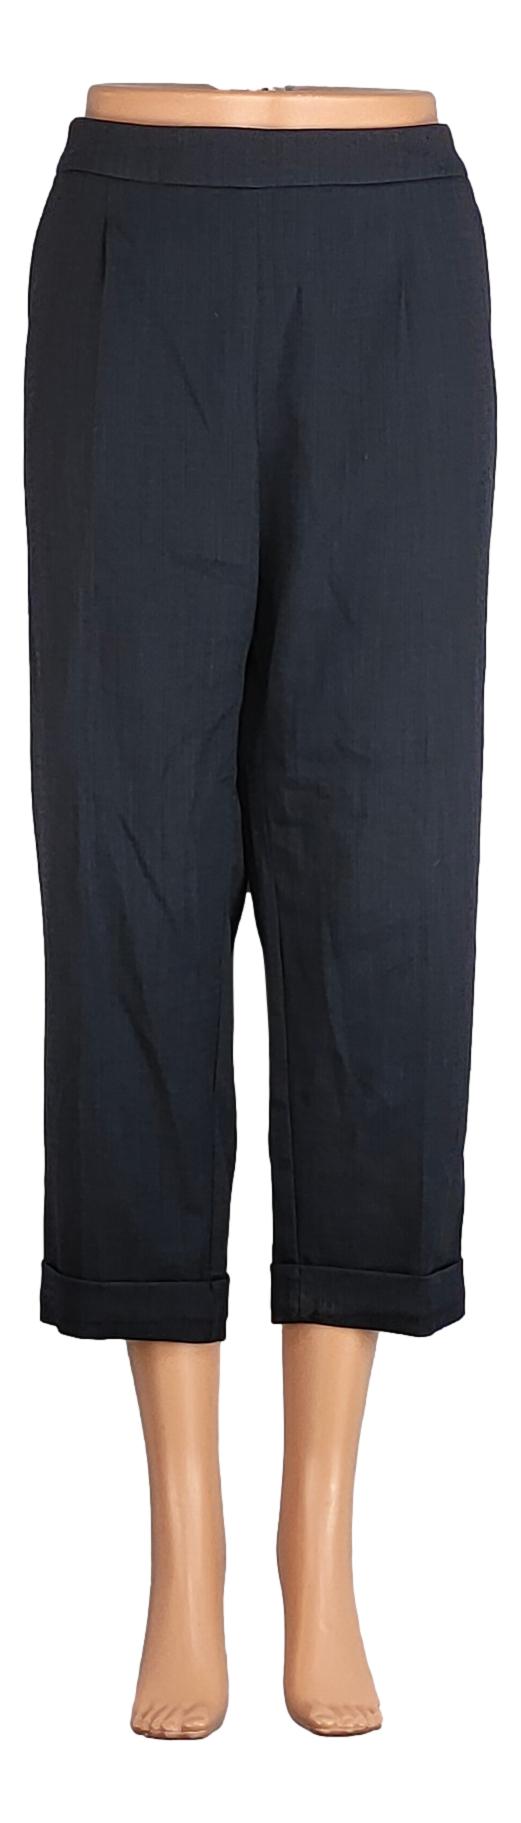 Pantalon Sans Marque -Taille 44